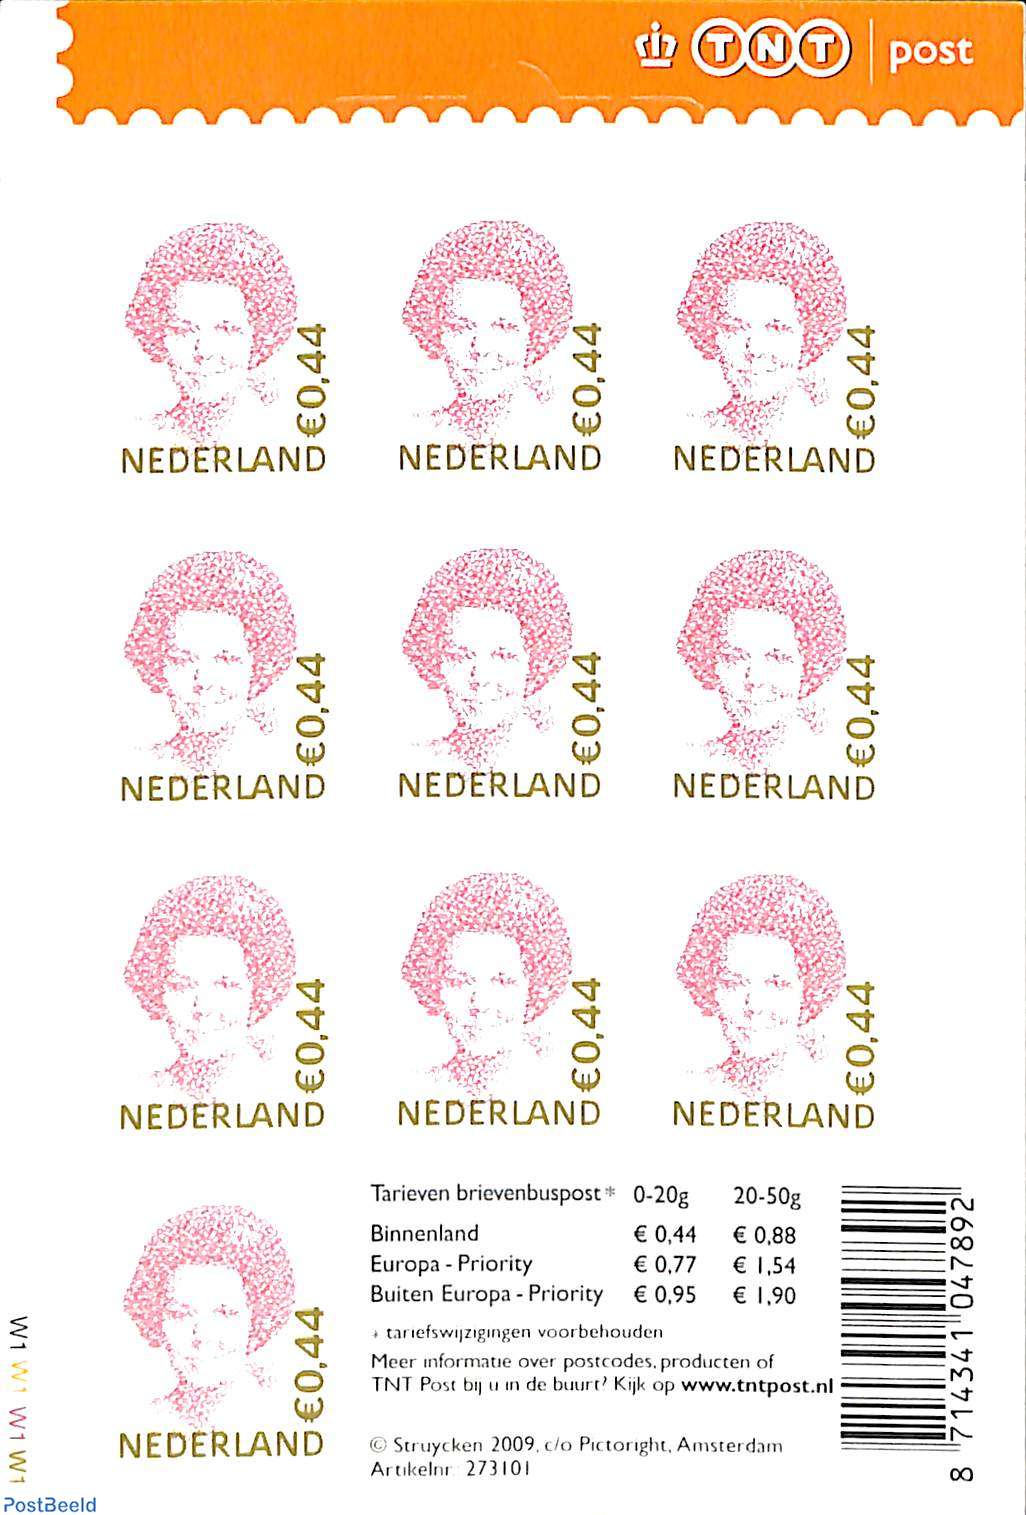 Samengroeiing Belichamen Invloedrijk Stamp 2006, Netherlands Beatrix 10x 0.44 foil sheet TNT logo, normal perf.,  close hanging eye, 2006 - Collecting Stamps - PostBeeld - Online Stamp Shop  - Collecting